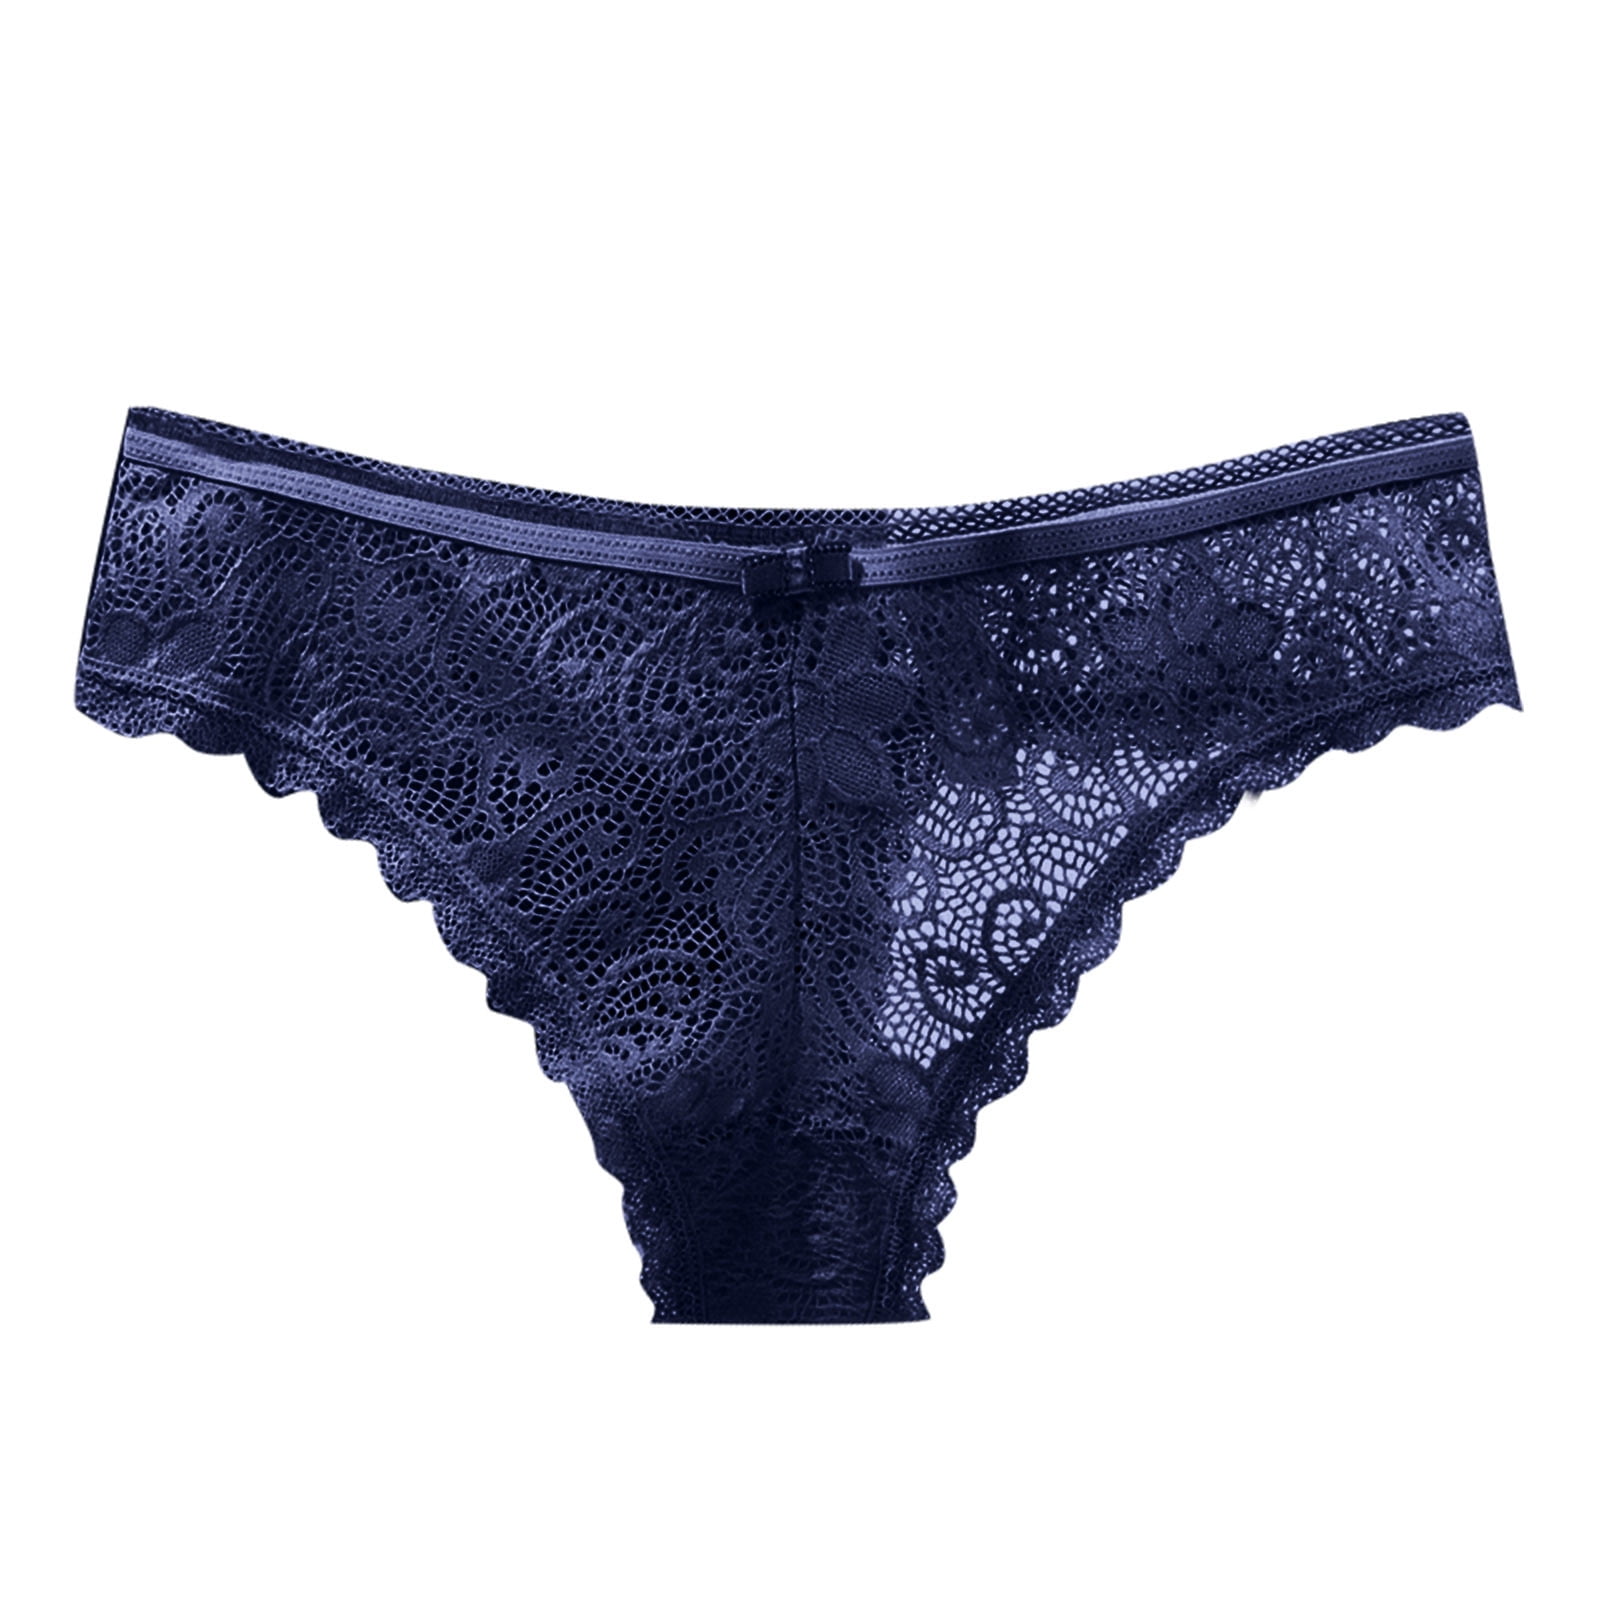 JDEFEG Boy Shorts Underwear For Women Plus Size 4X Fashion Lace Lingerie  Underwear Lace Pants Lace Waist Underwear Women Skirts Mid Length Under 15